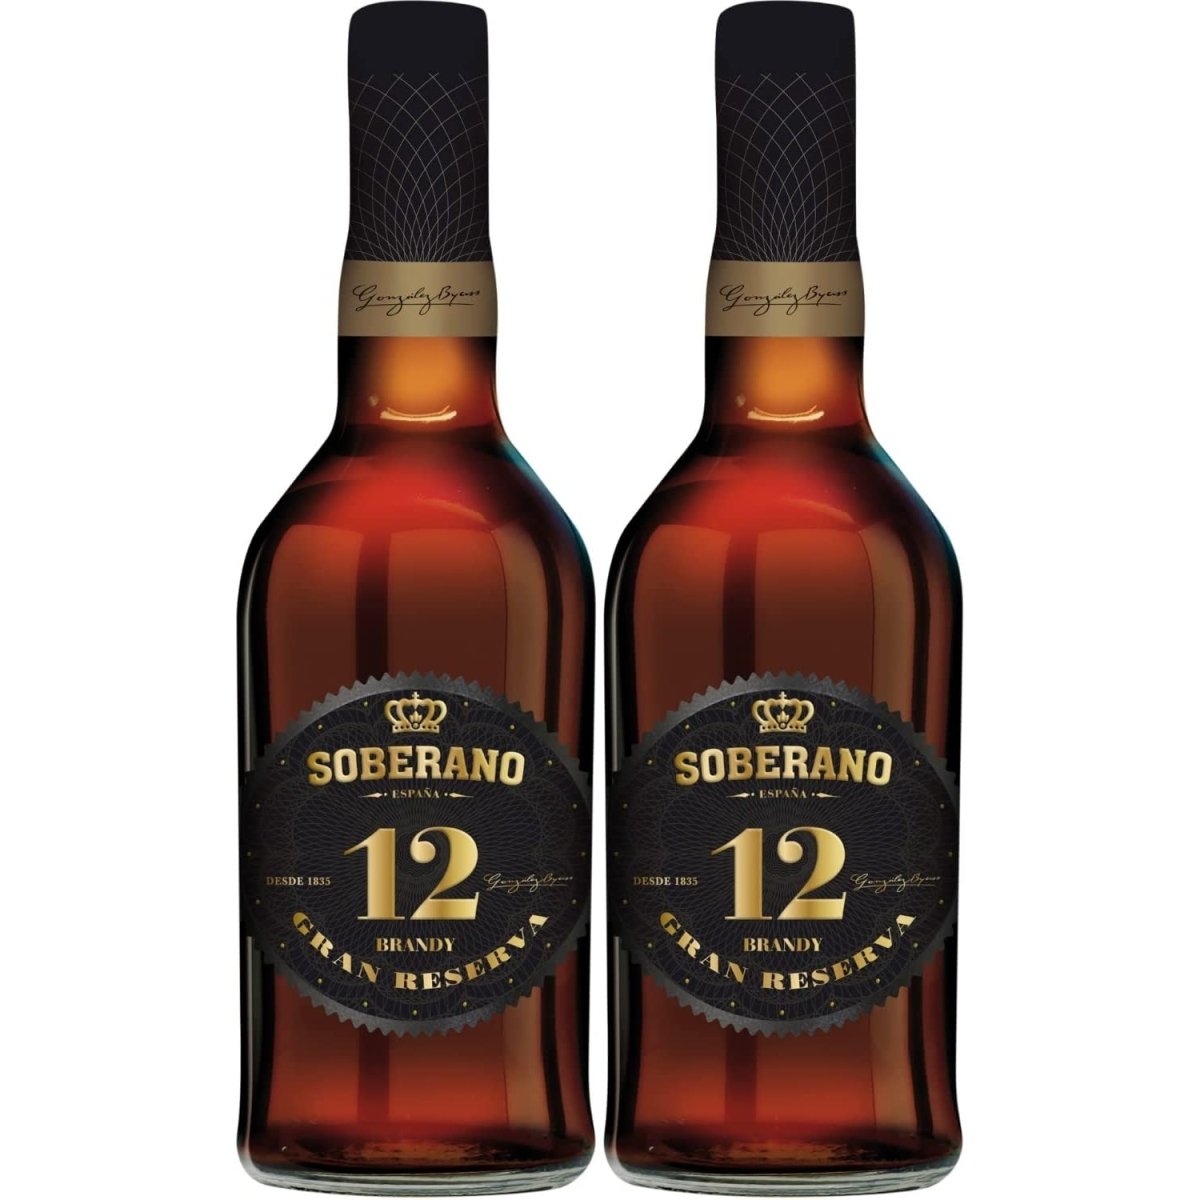 González Byass Soberano Solera Reserva 12 Jahre Brandy süß Jerez Spanien (2 Flaschen) - Versanel -